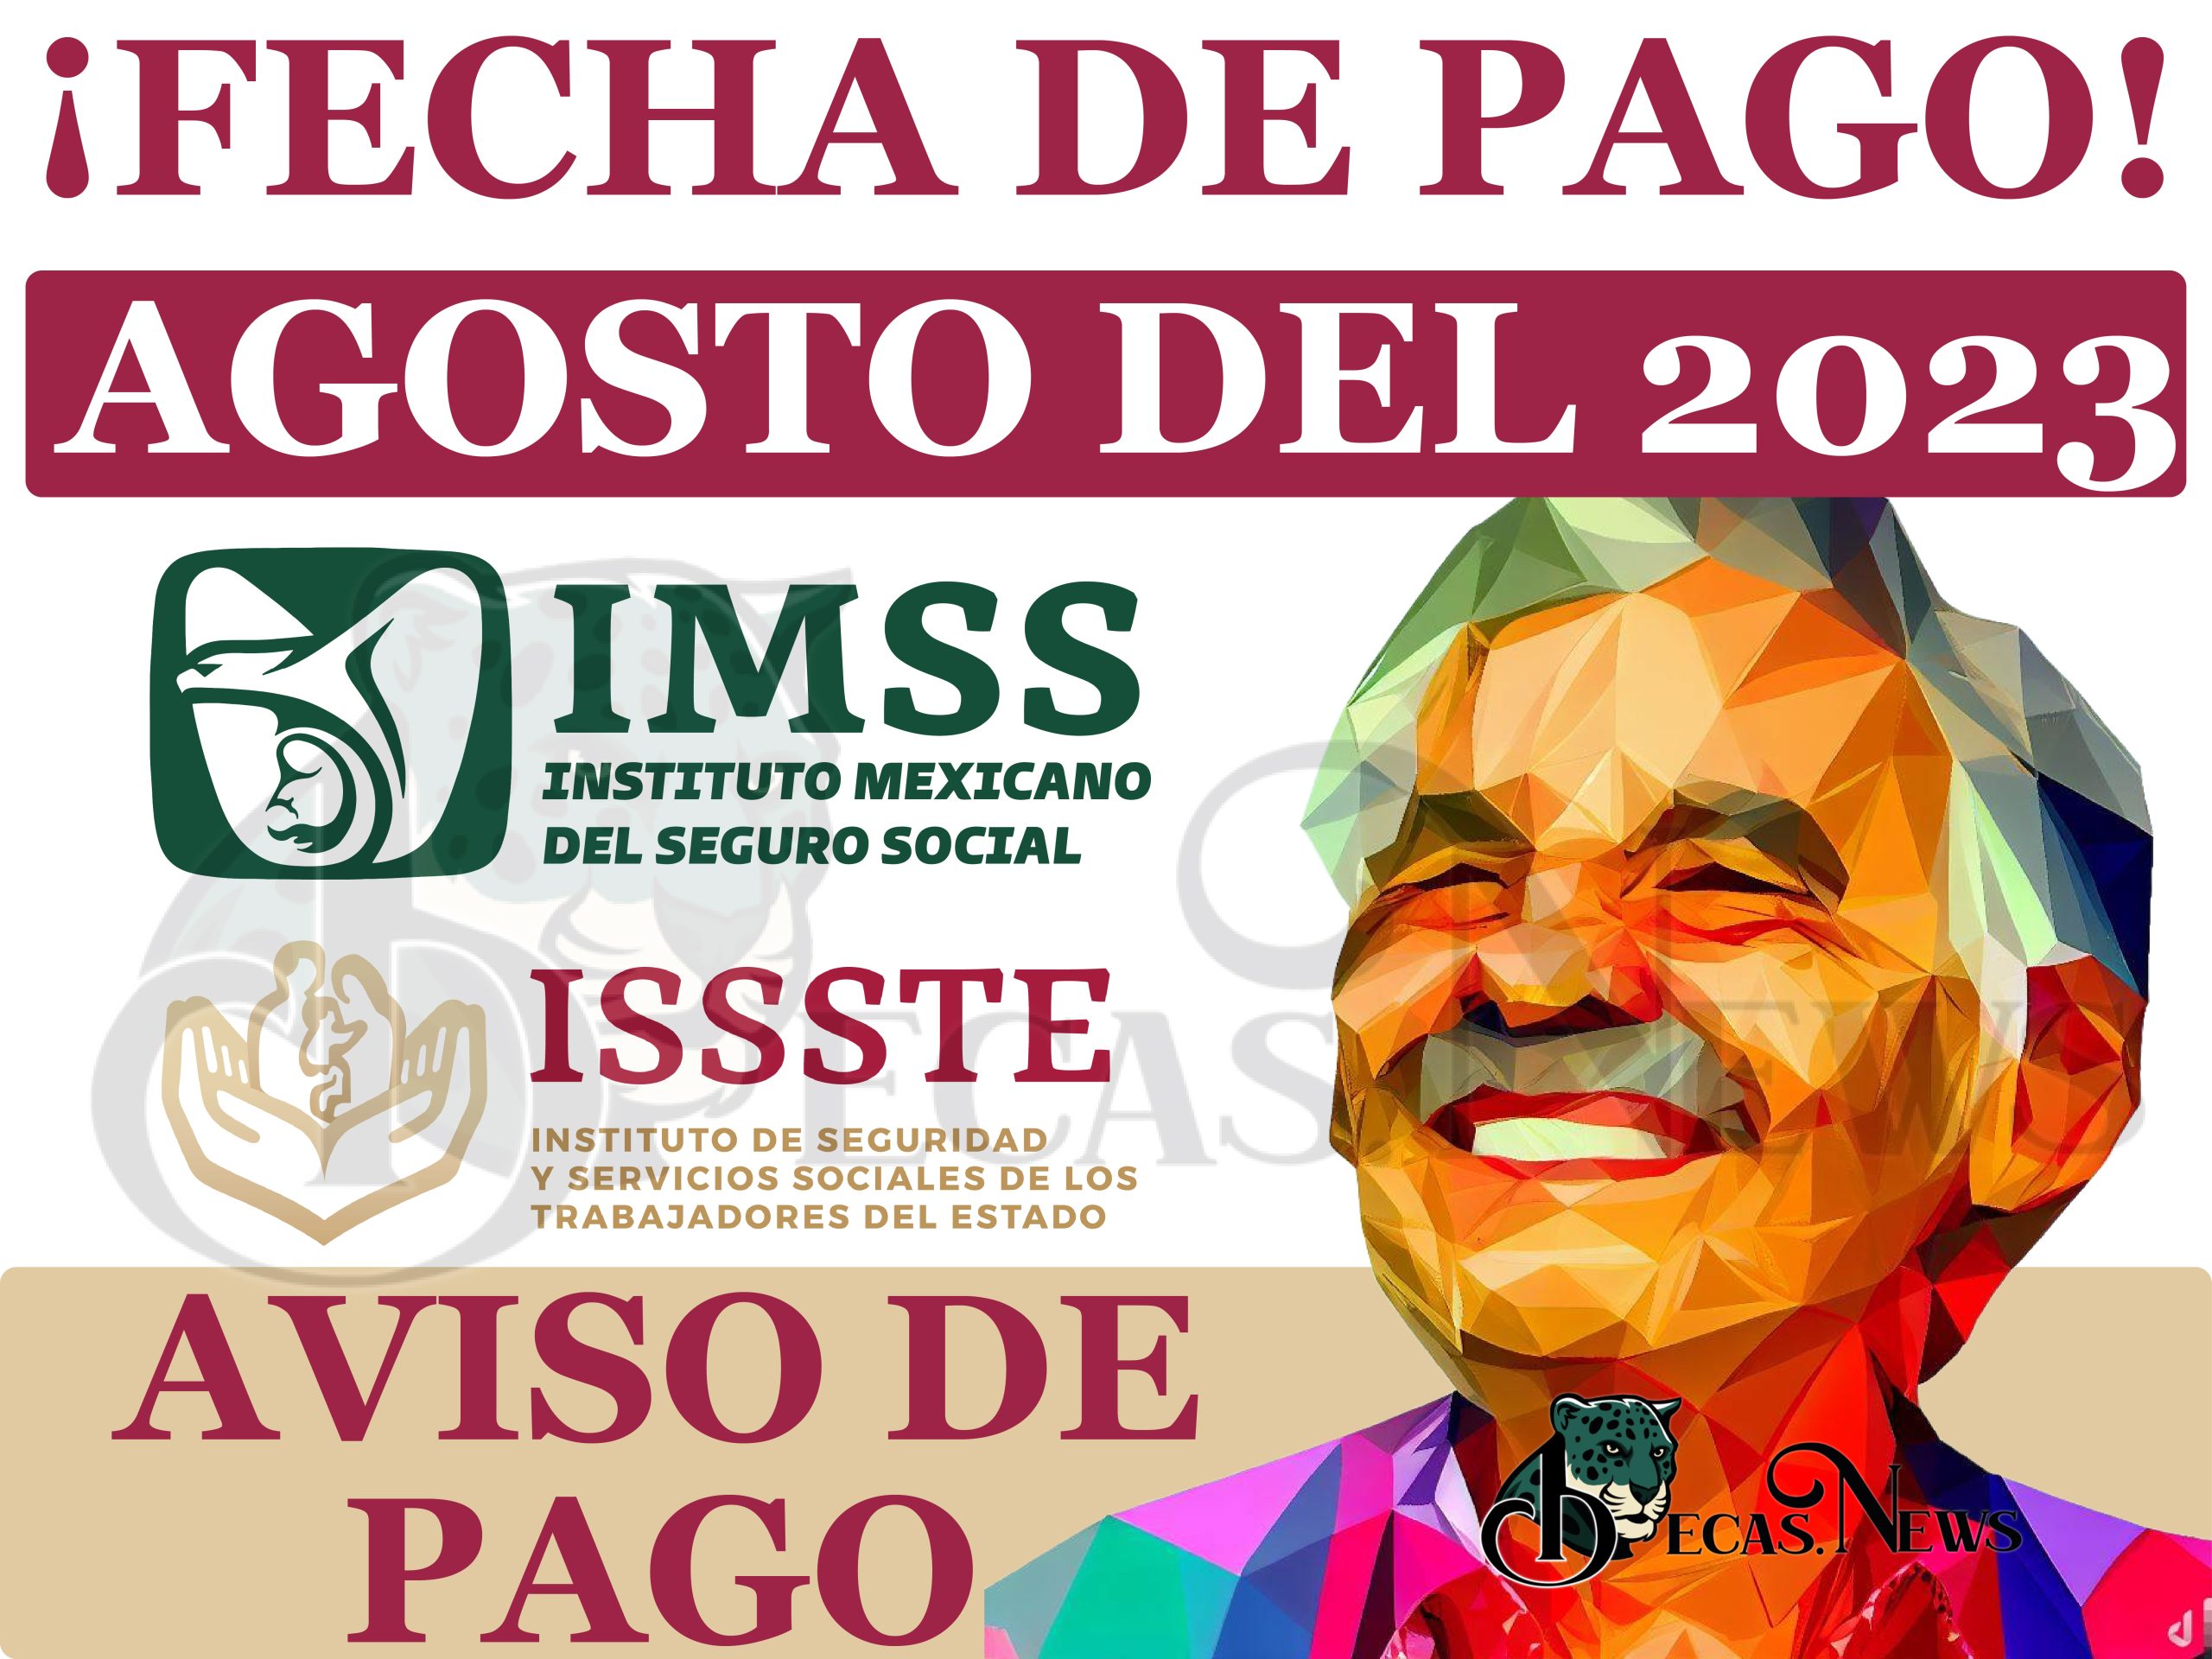 Agosto 2023 y Más: ¡AVISO DE PAGO! Pensiones IMSS e ISSSTE